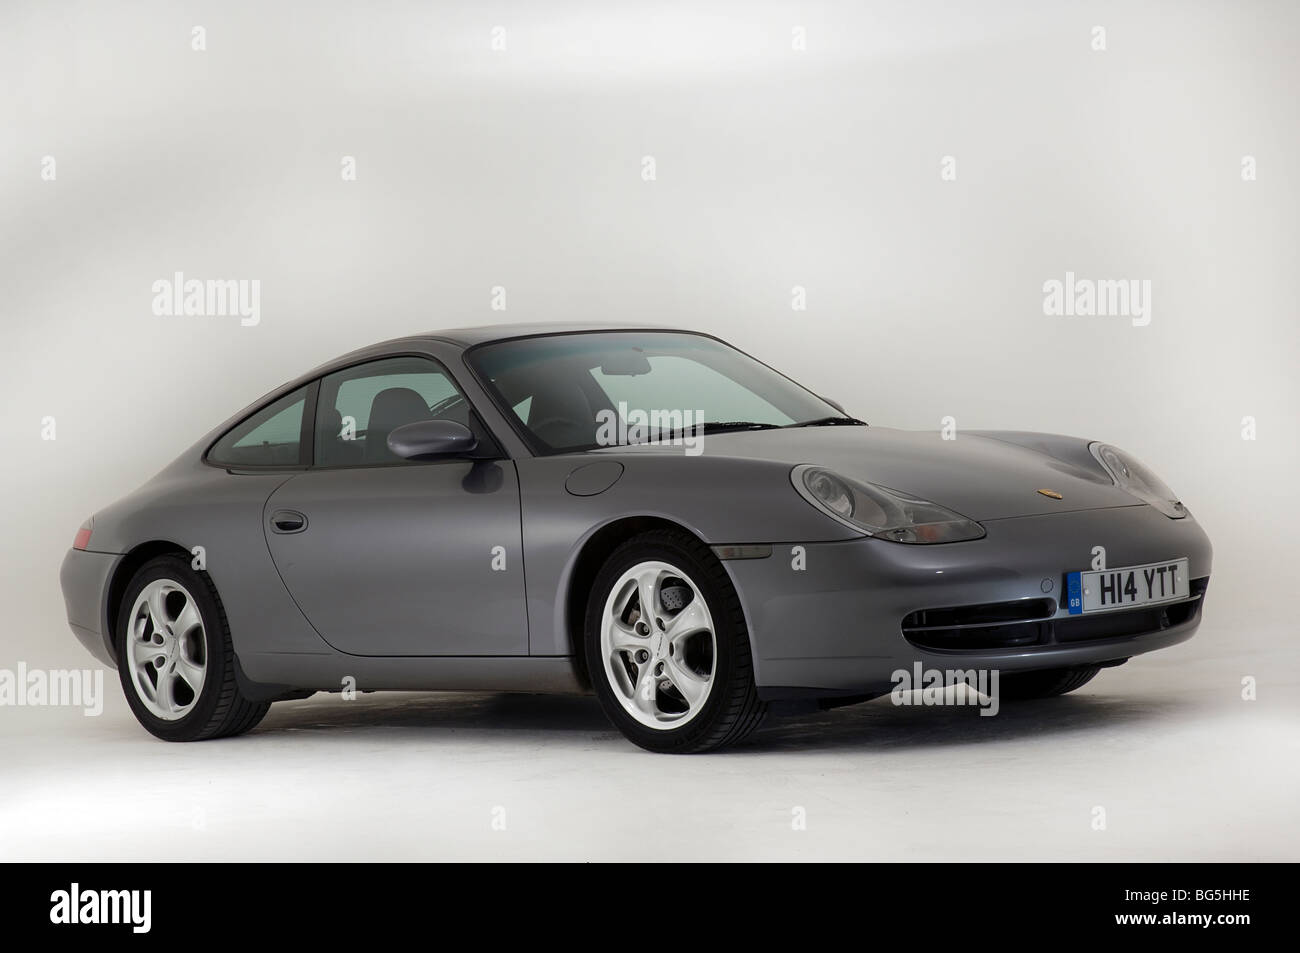 Porsche 996 911 immagini e fotografie stock ad alta risoluzione - Alamy